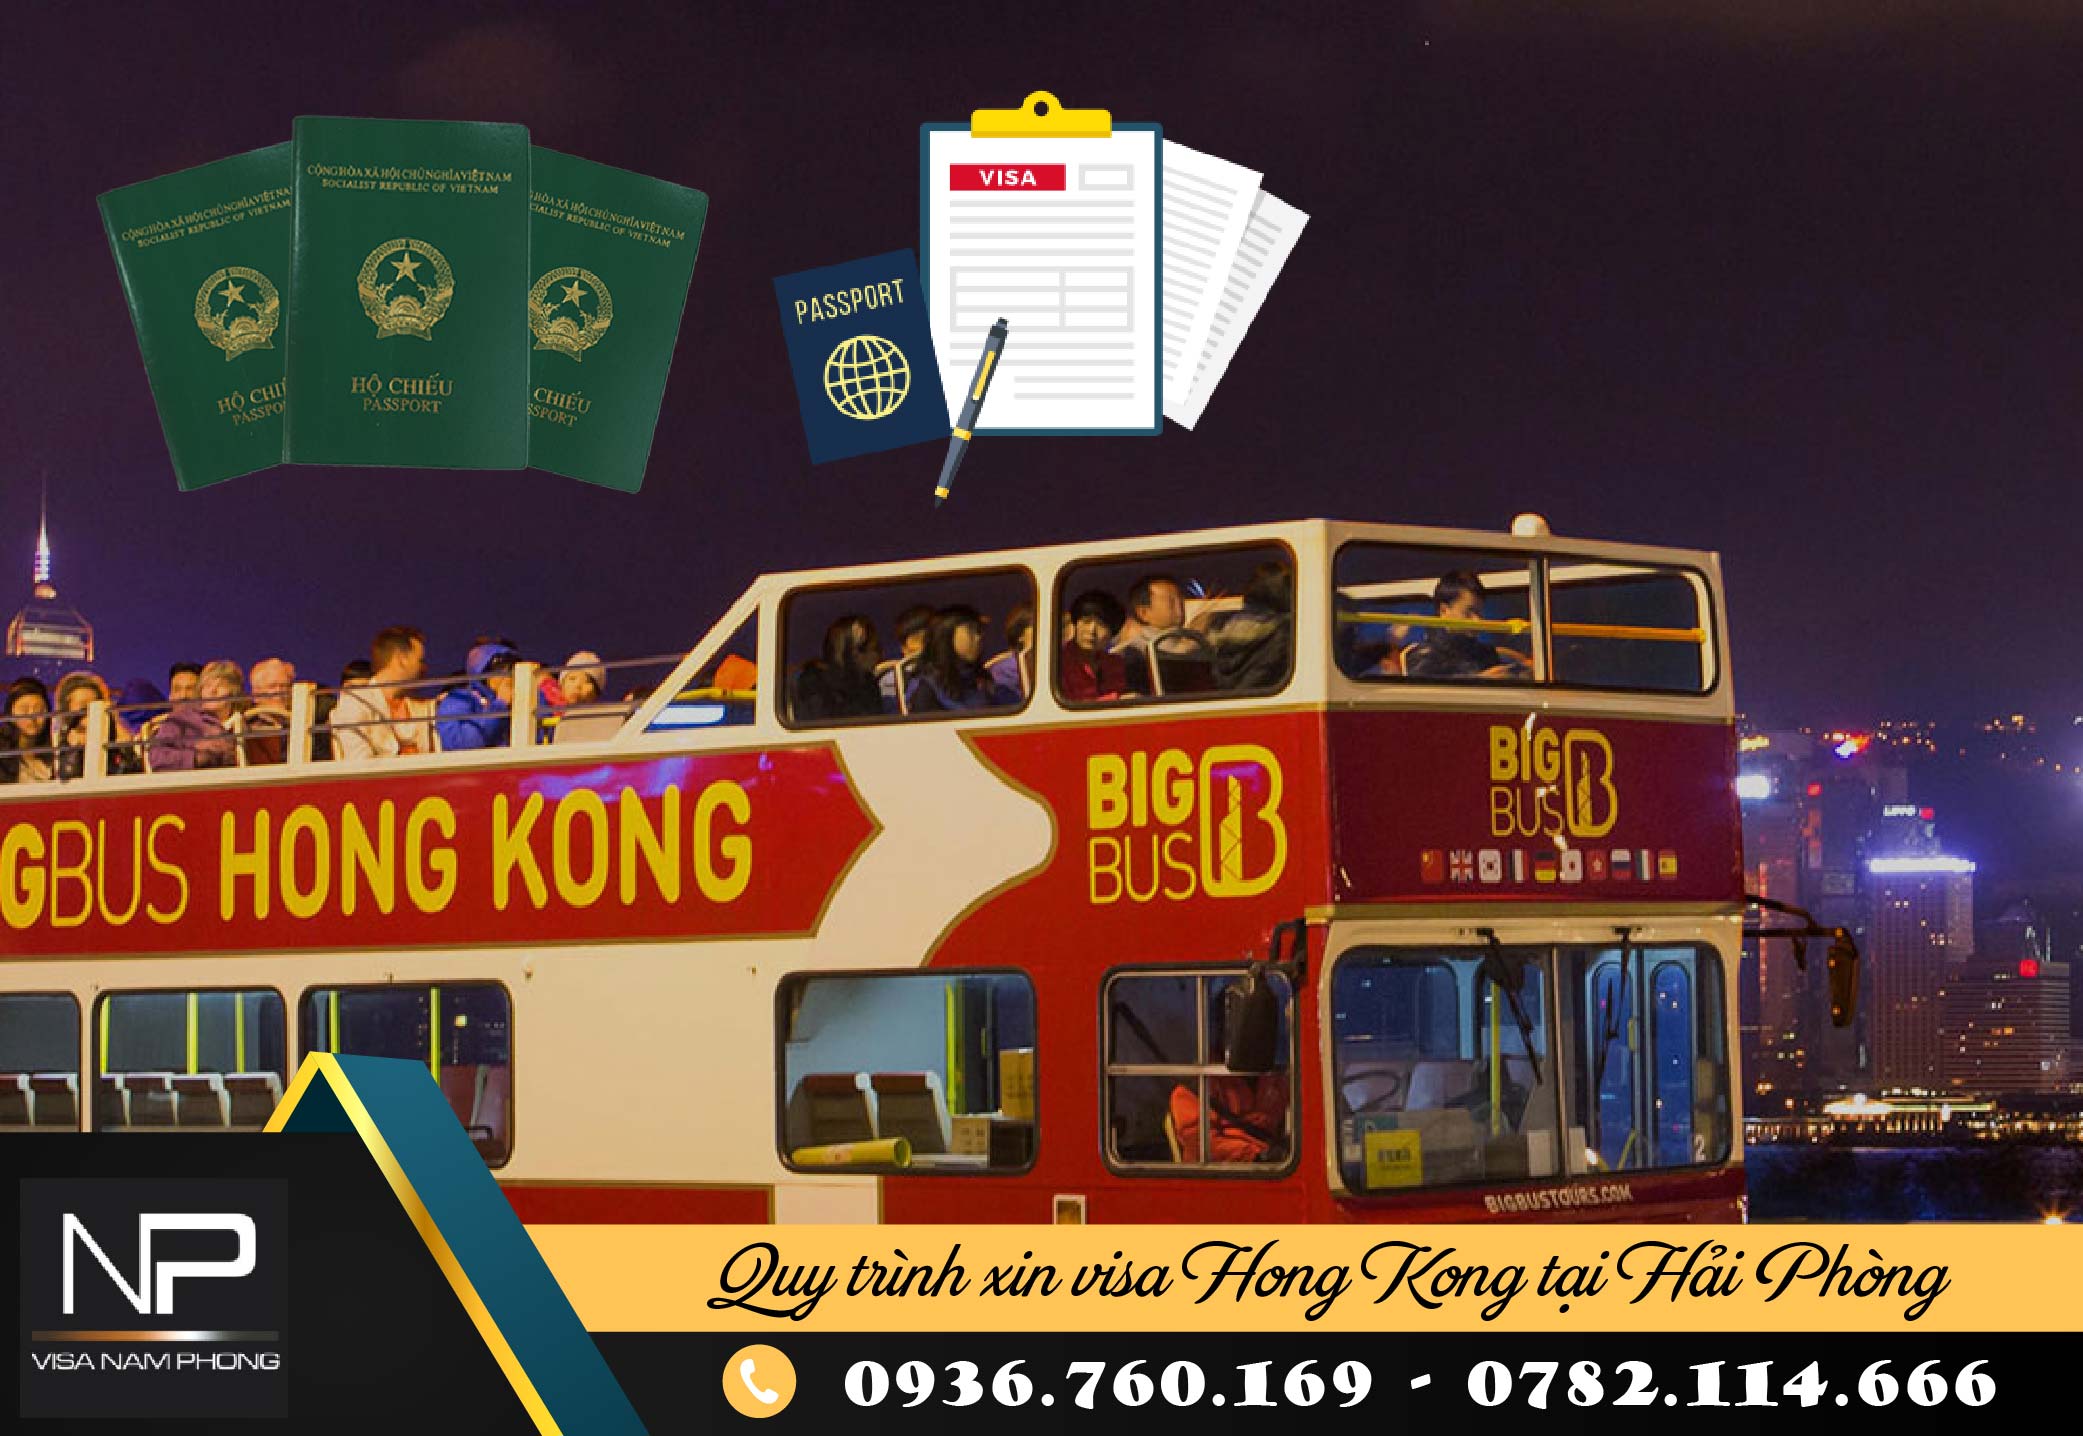 Quy trình xin visa Hong Kong tại Hải Phòng